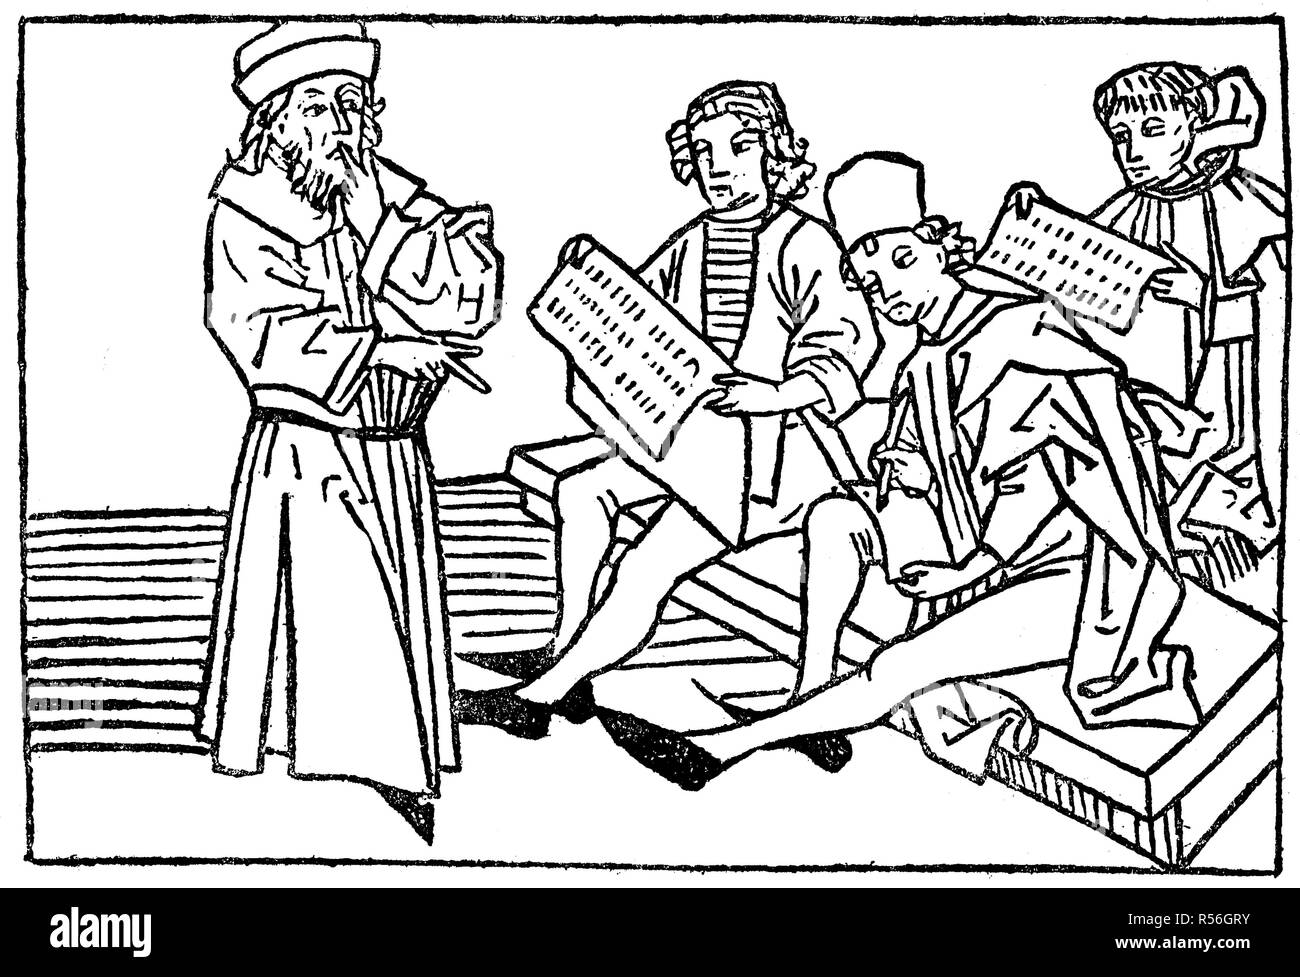 Des leçons de grammaire et de logique de miroir de la vie humaine, 1479, gravure sur bois, Angleterre Banque D'Images